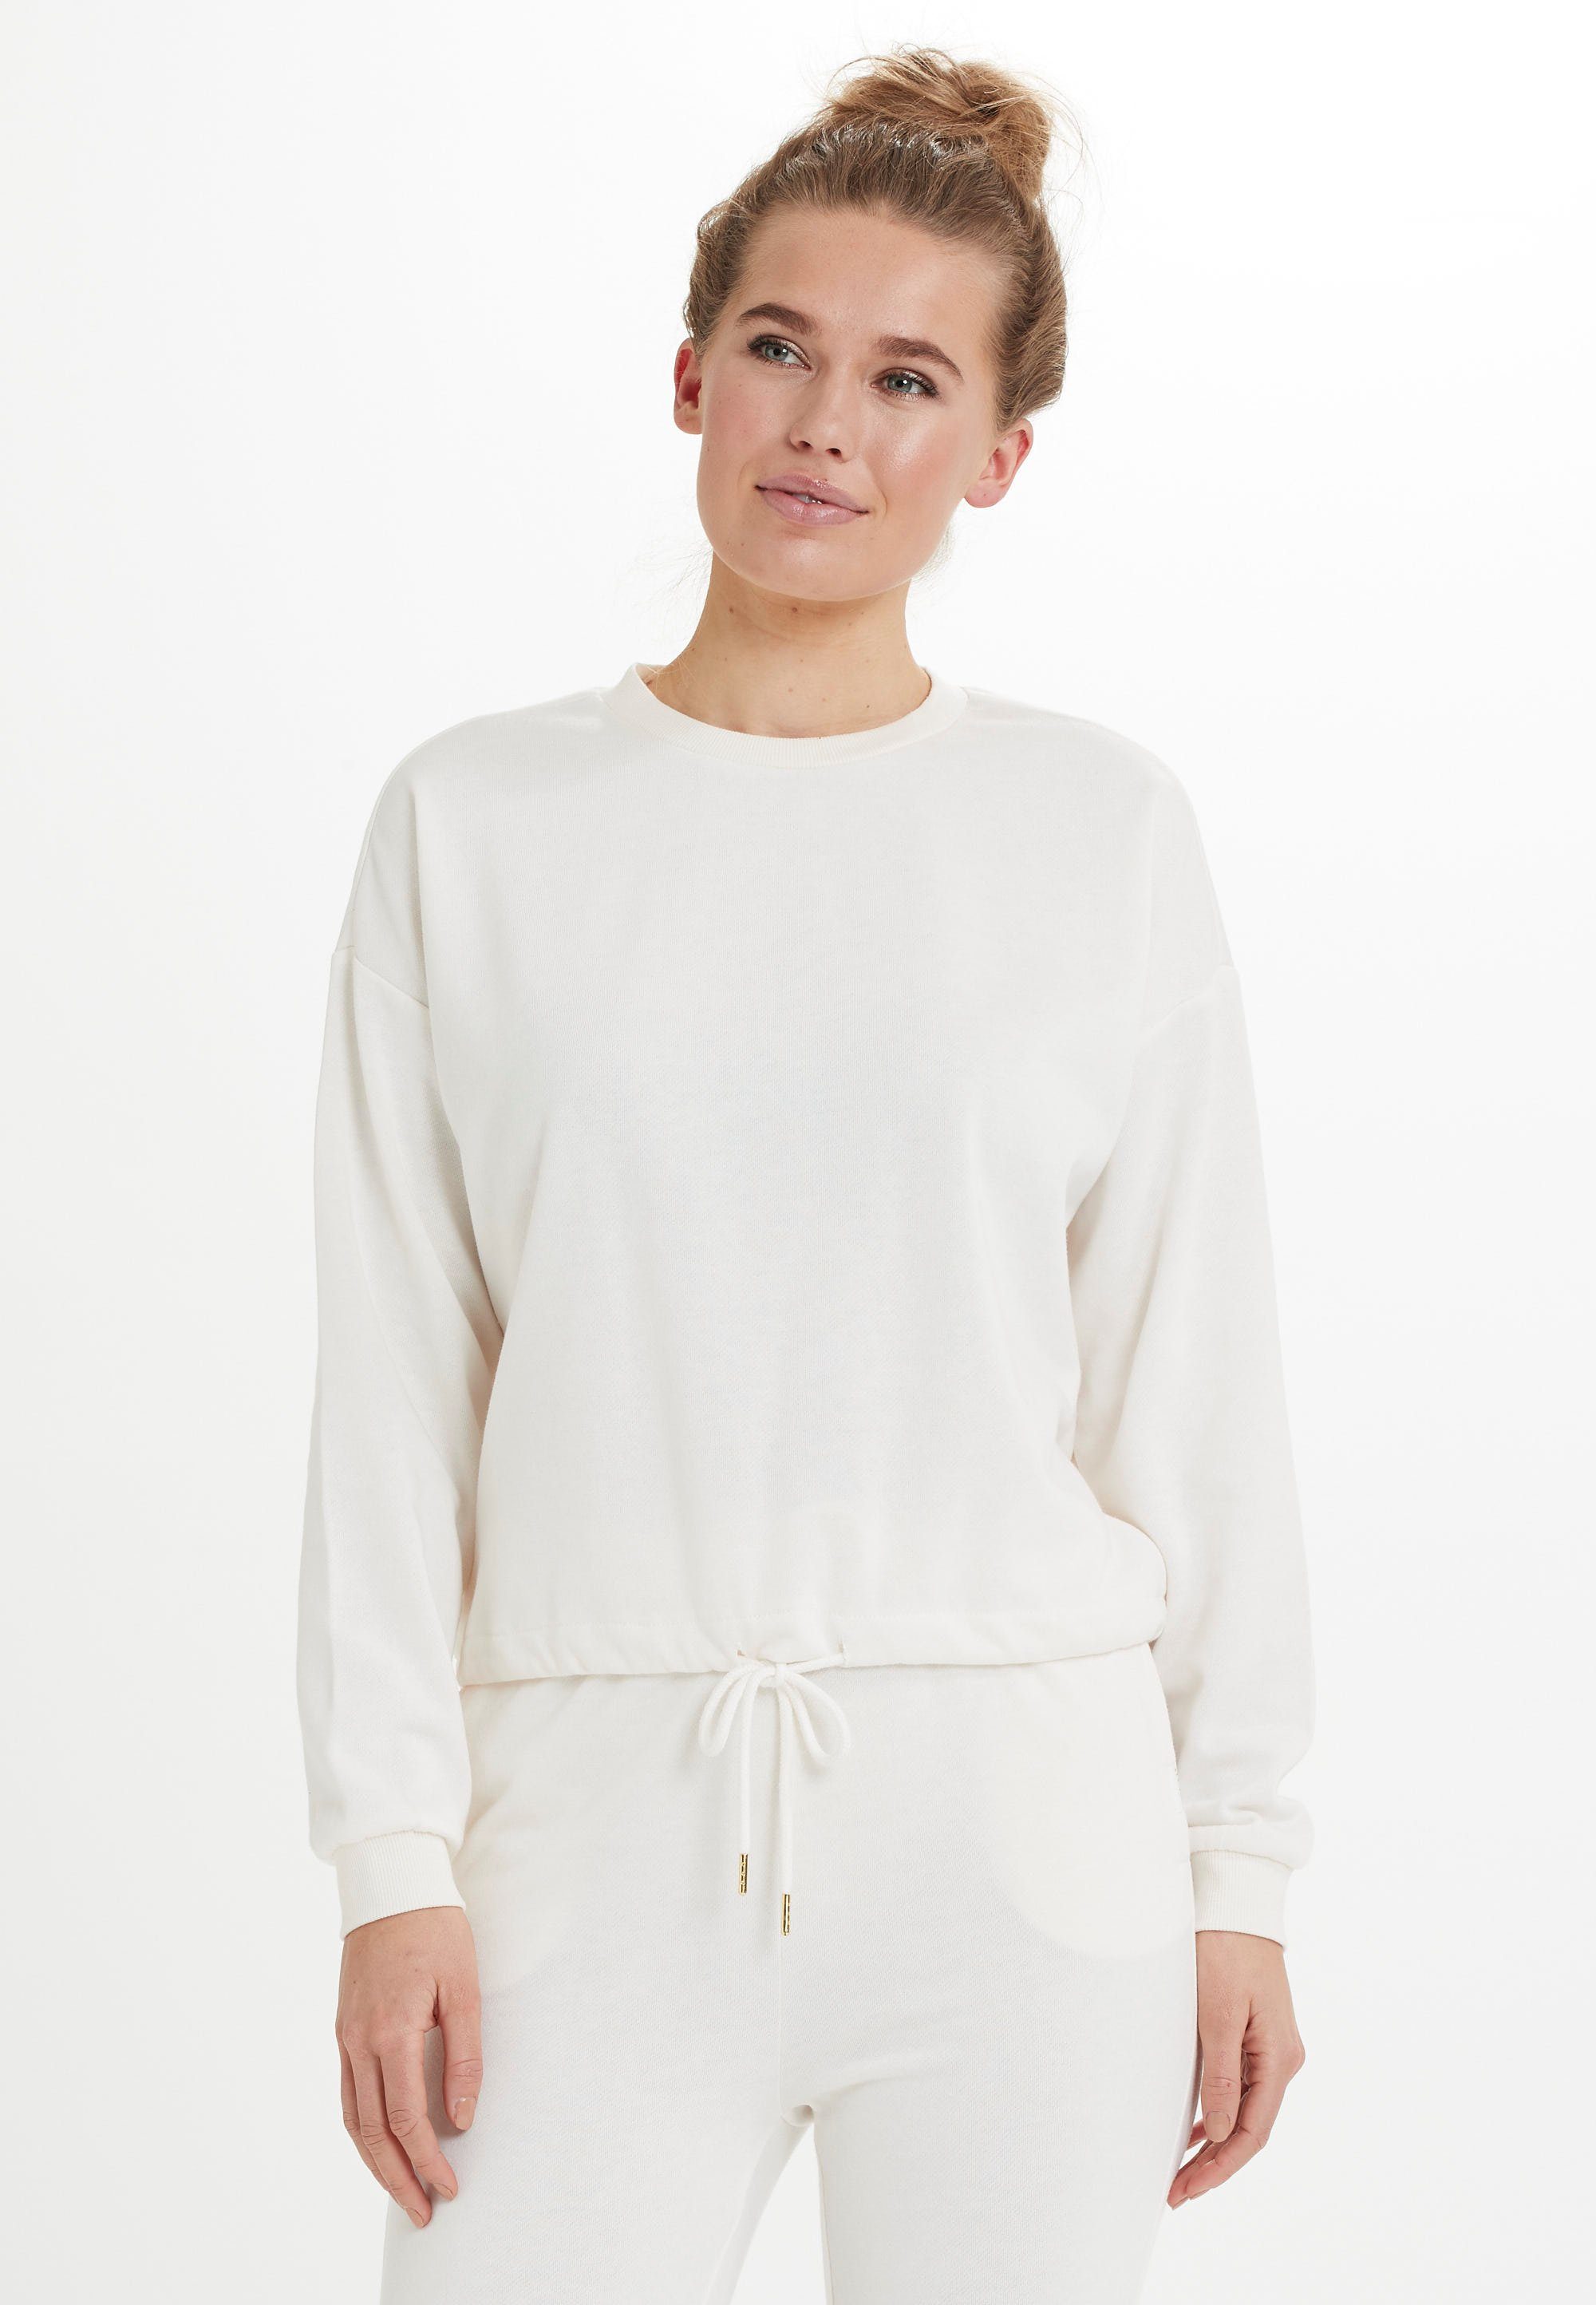 hippem Polyester Sweatshirt Soffina Baumwolle und aus Material Style, in besonders weich ist ATHLECIA